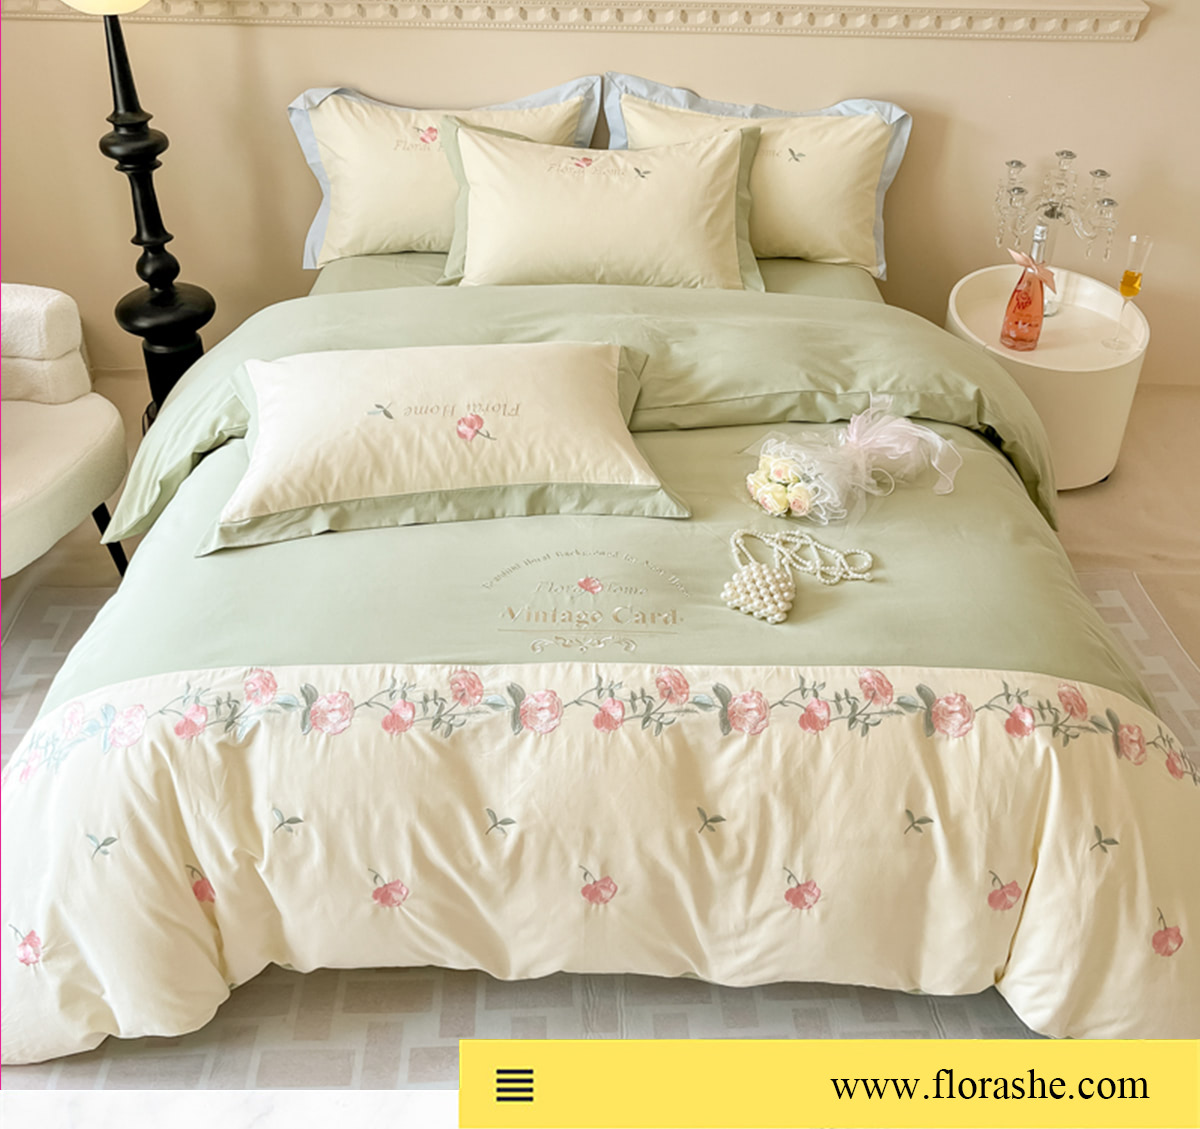 Vintage-Floral-Soft-Brushed-Cotton-Embroidery-Bedsheets-Set16